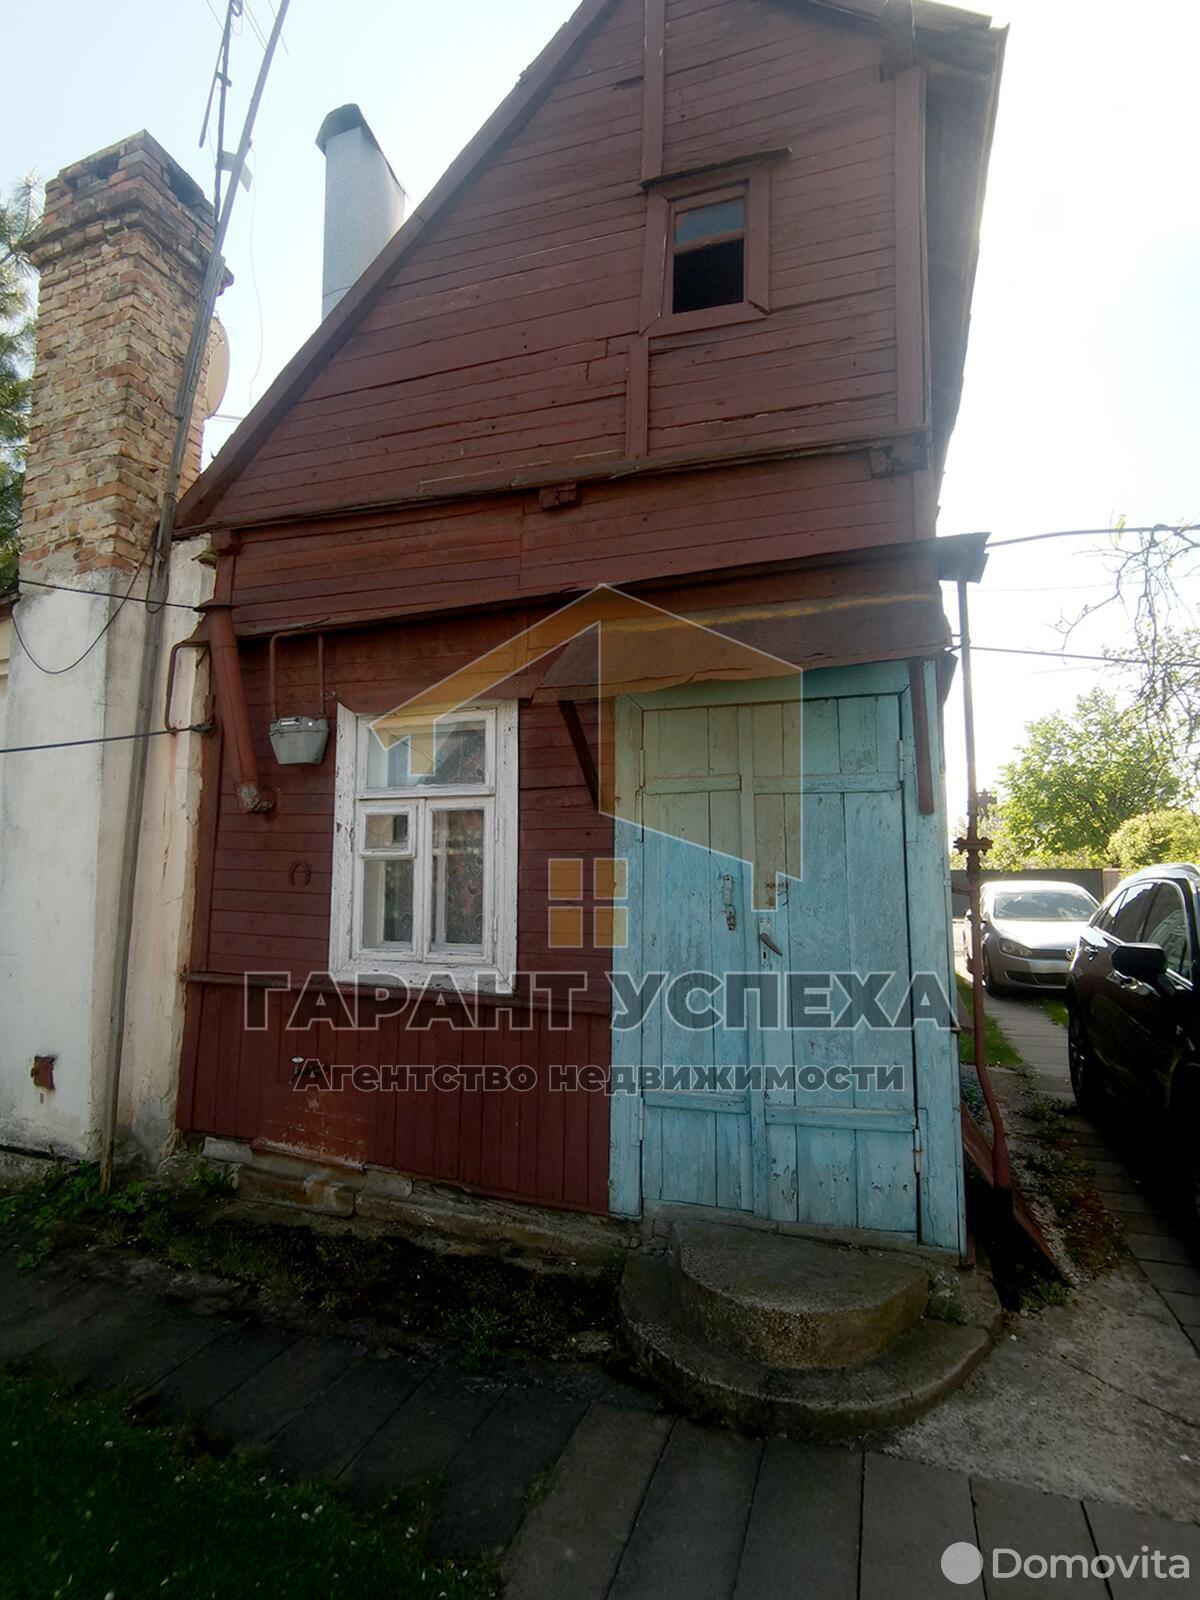 Продать 1-этажный дом в Бресте, Брестская область ул. Пионерская, 41500USD, код 636253 - фото 3